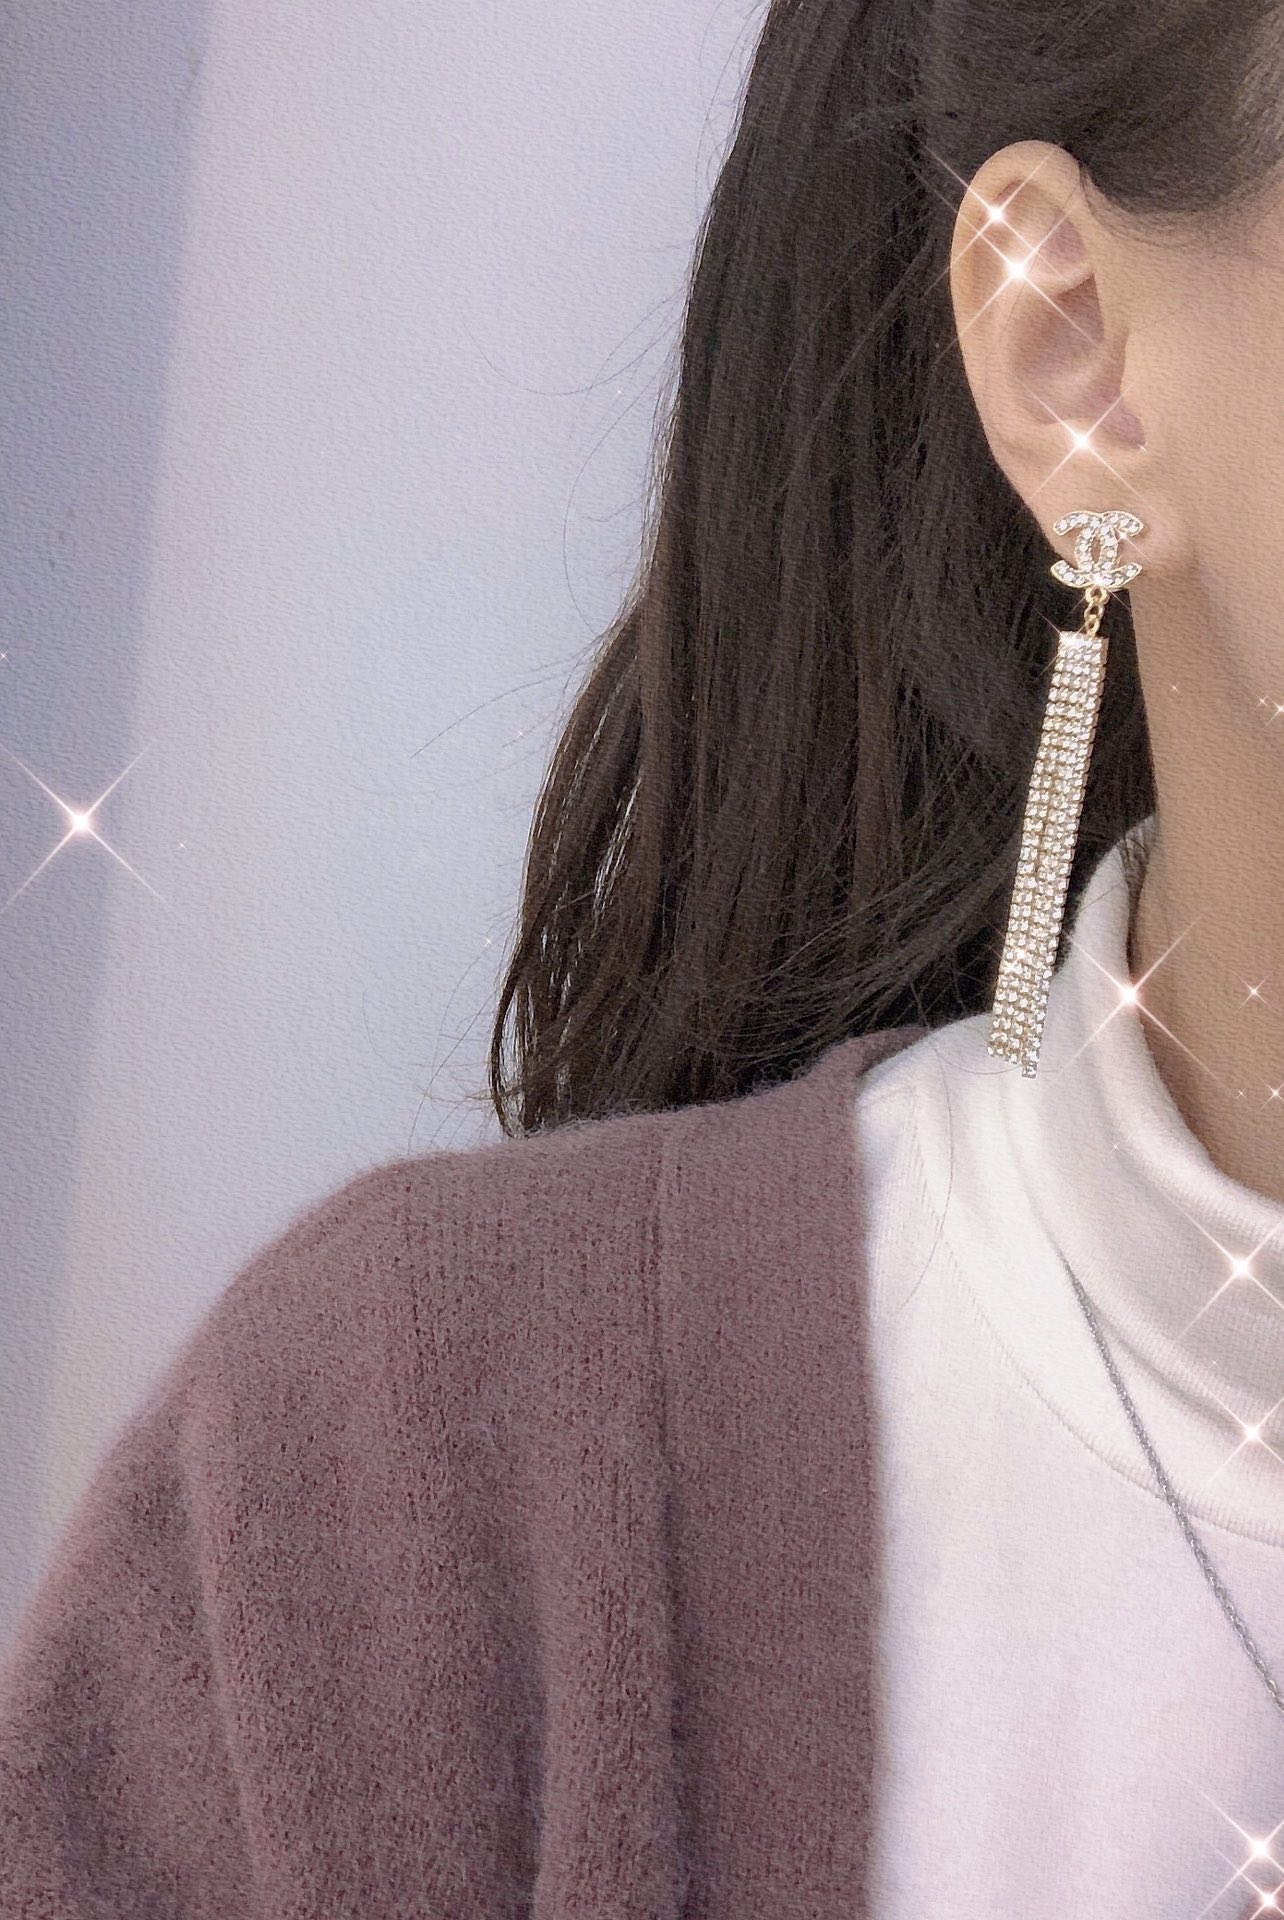 A378 Chanel earrings